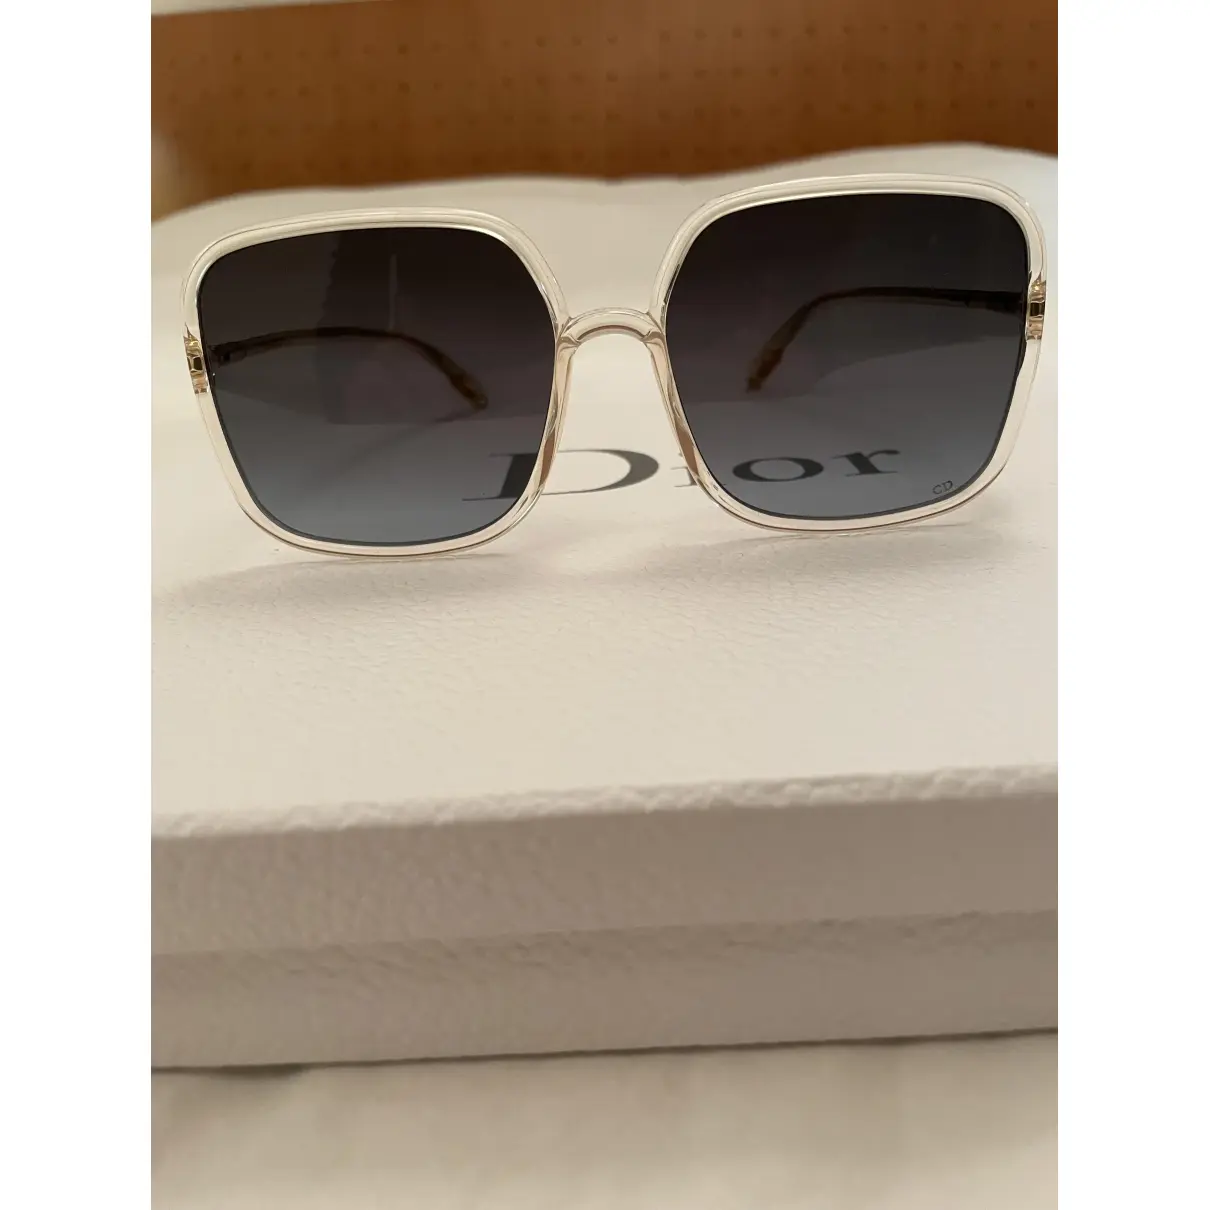 SoStellaire1 sunglasses Dior